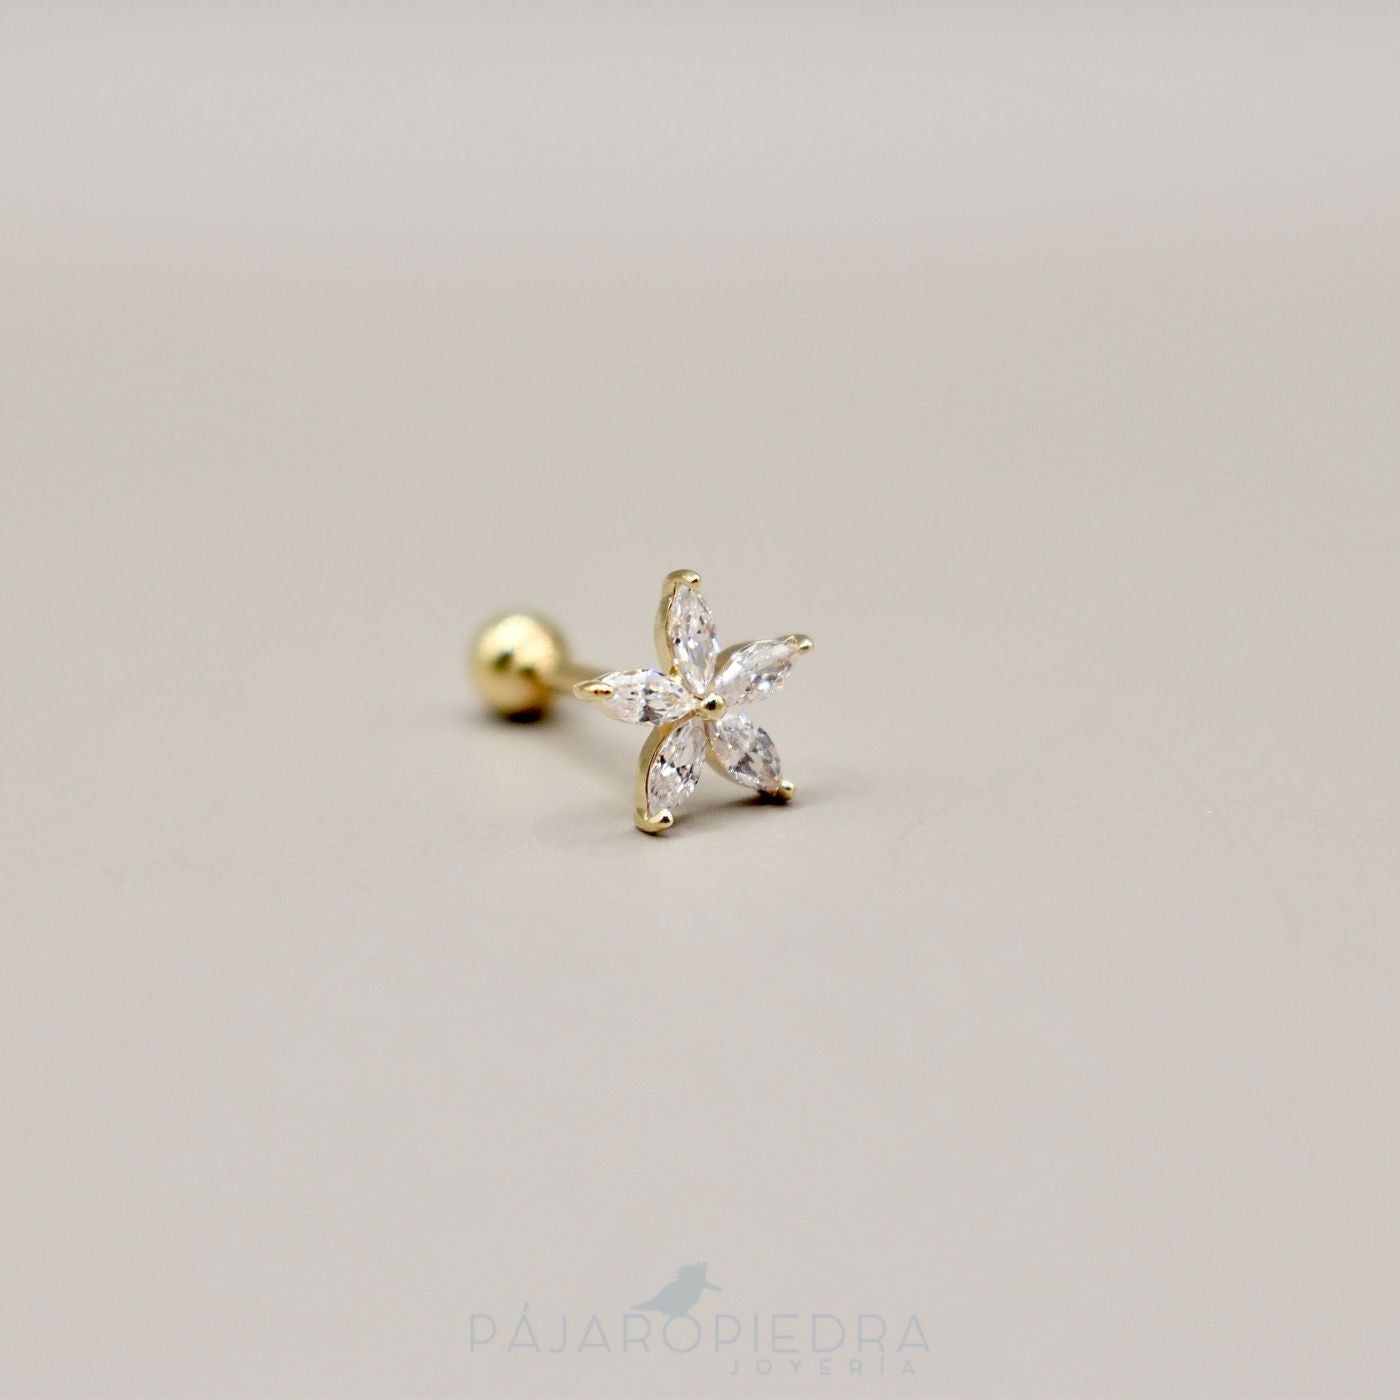 Piercing 14K Flor grande (Fine Jewelry)